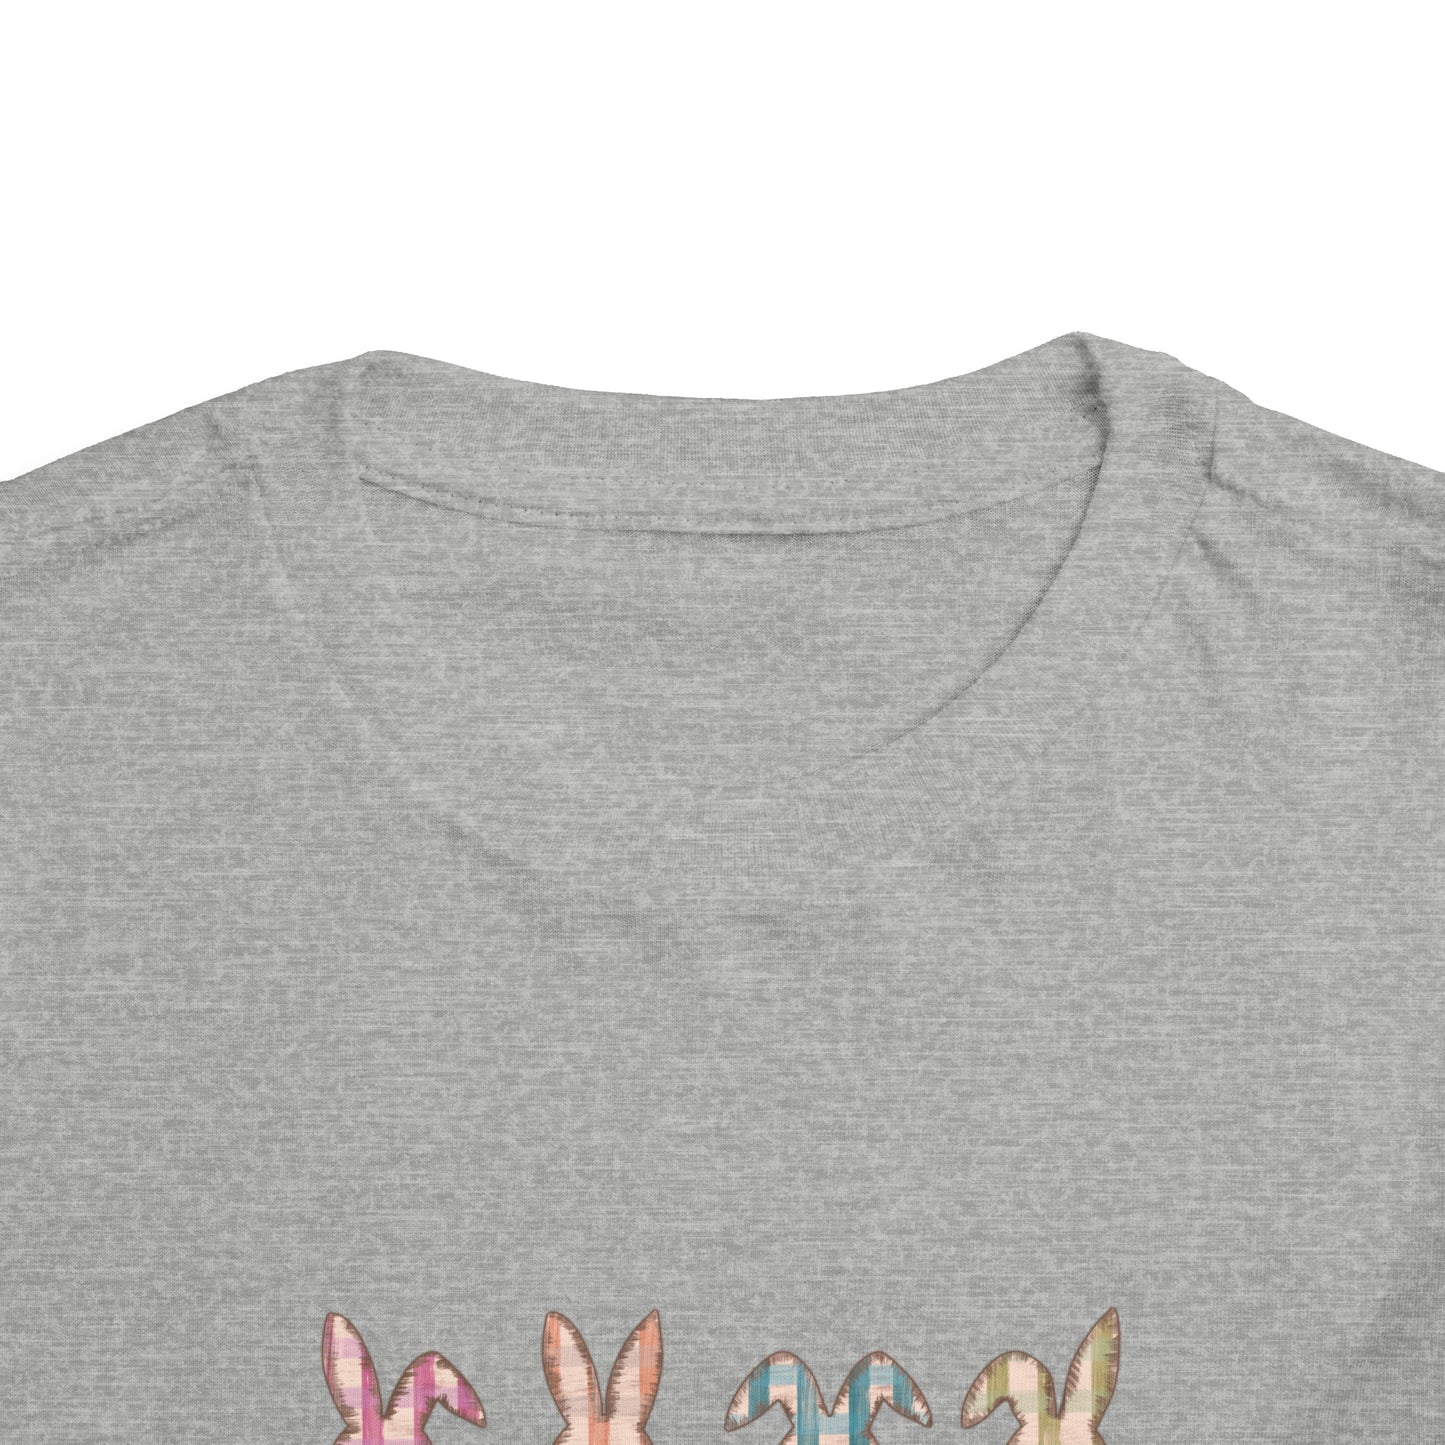 Hoppy Easter shirt